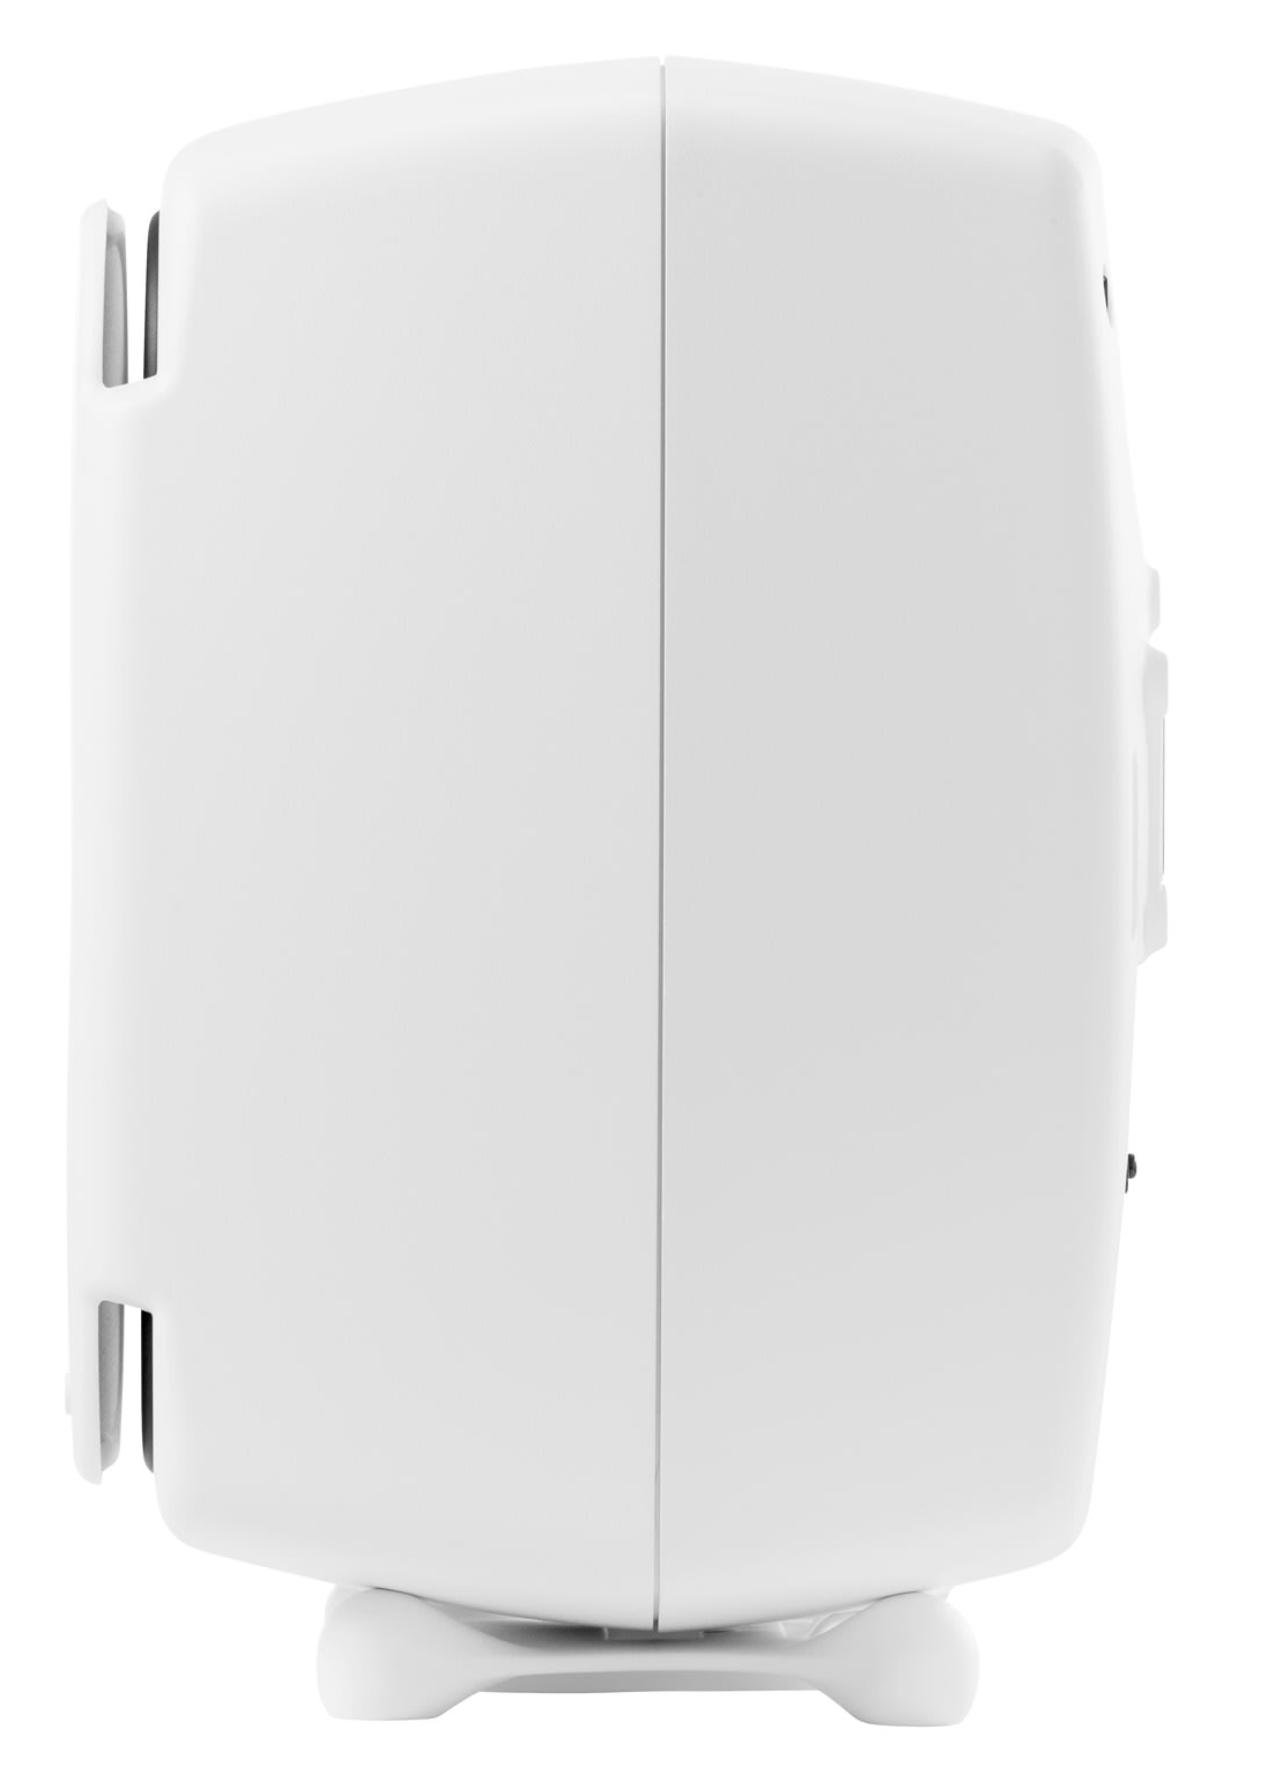 Genelec 8341A SAM Active Studio Monitors in white. Profile image